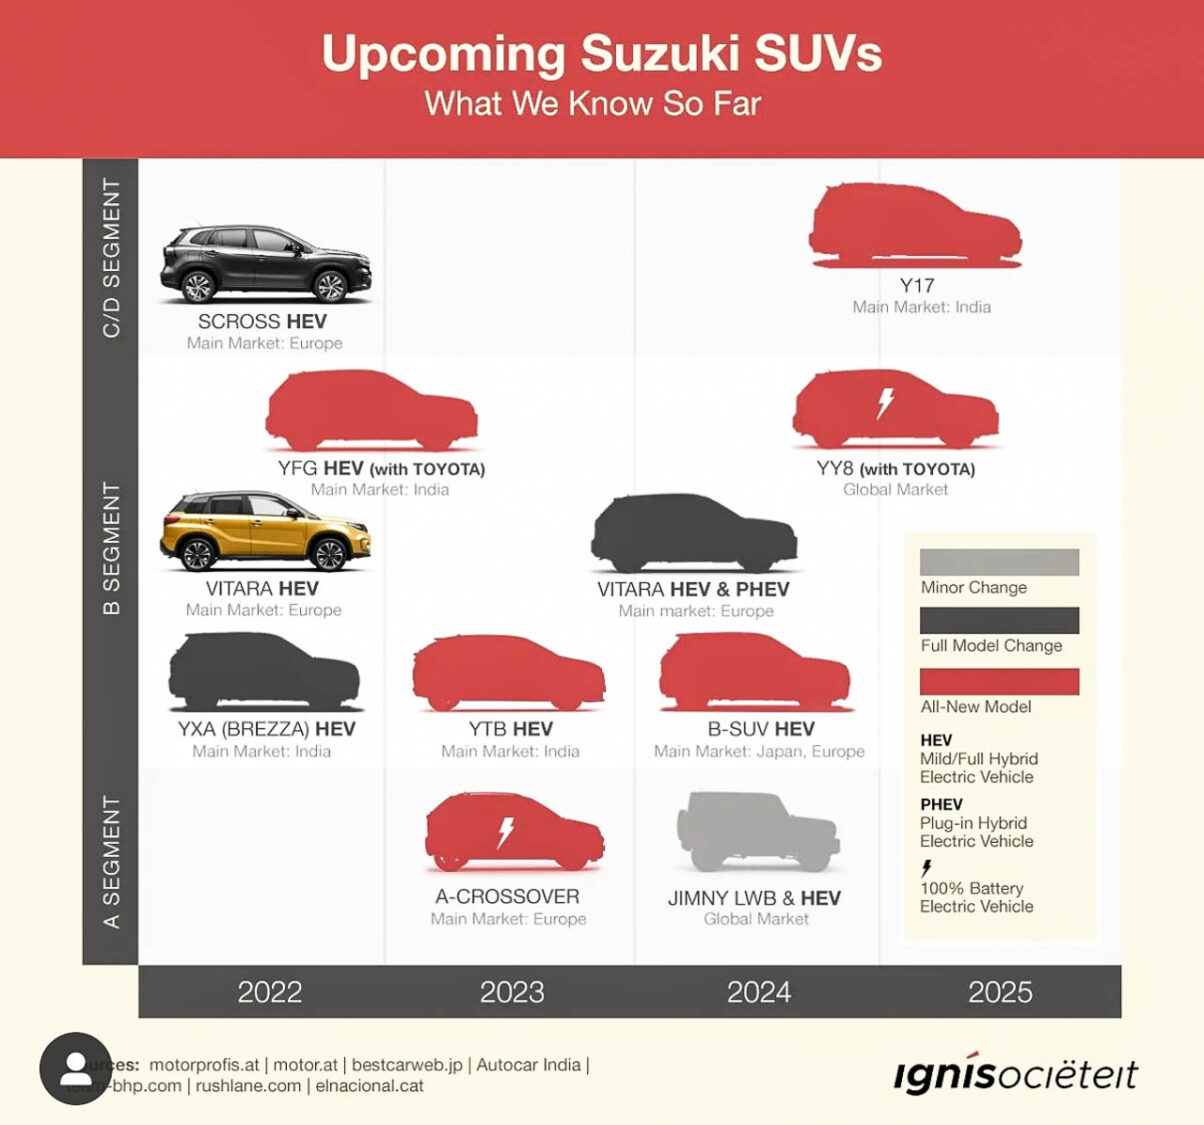 Upcoming Maruti Suzuki SUVs